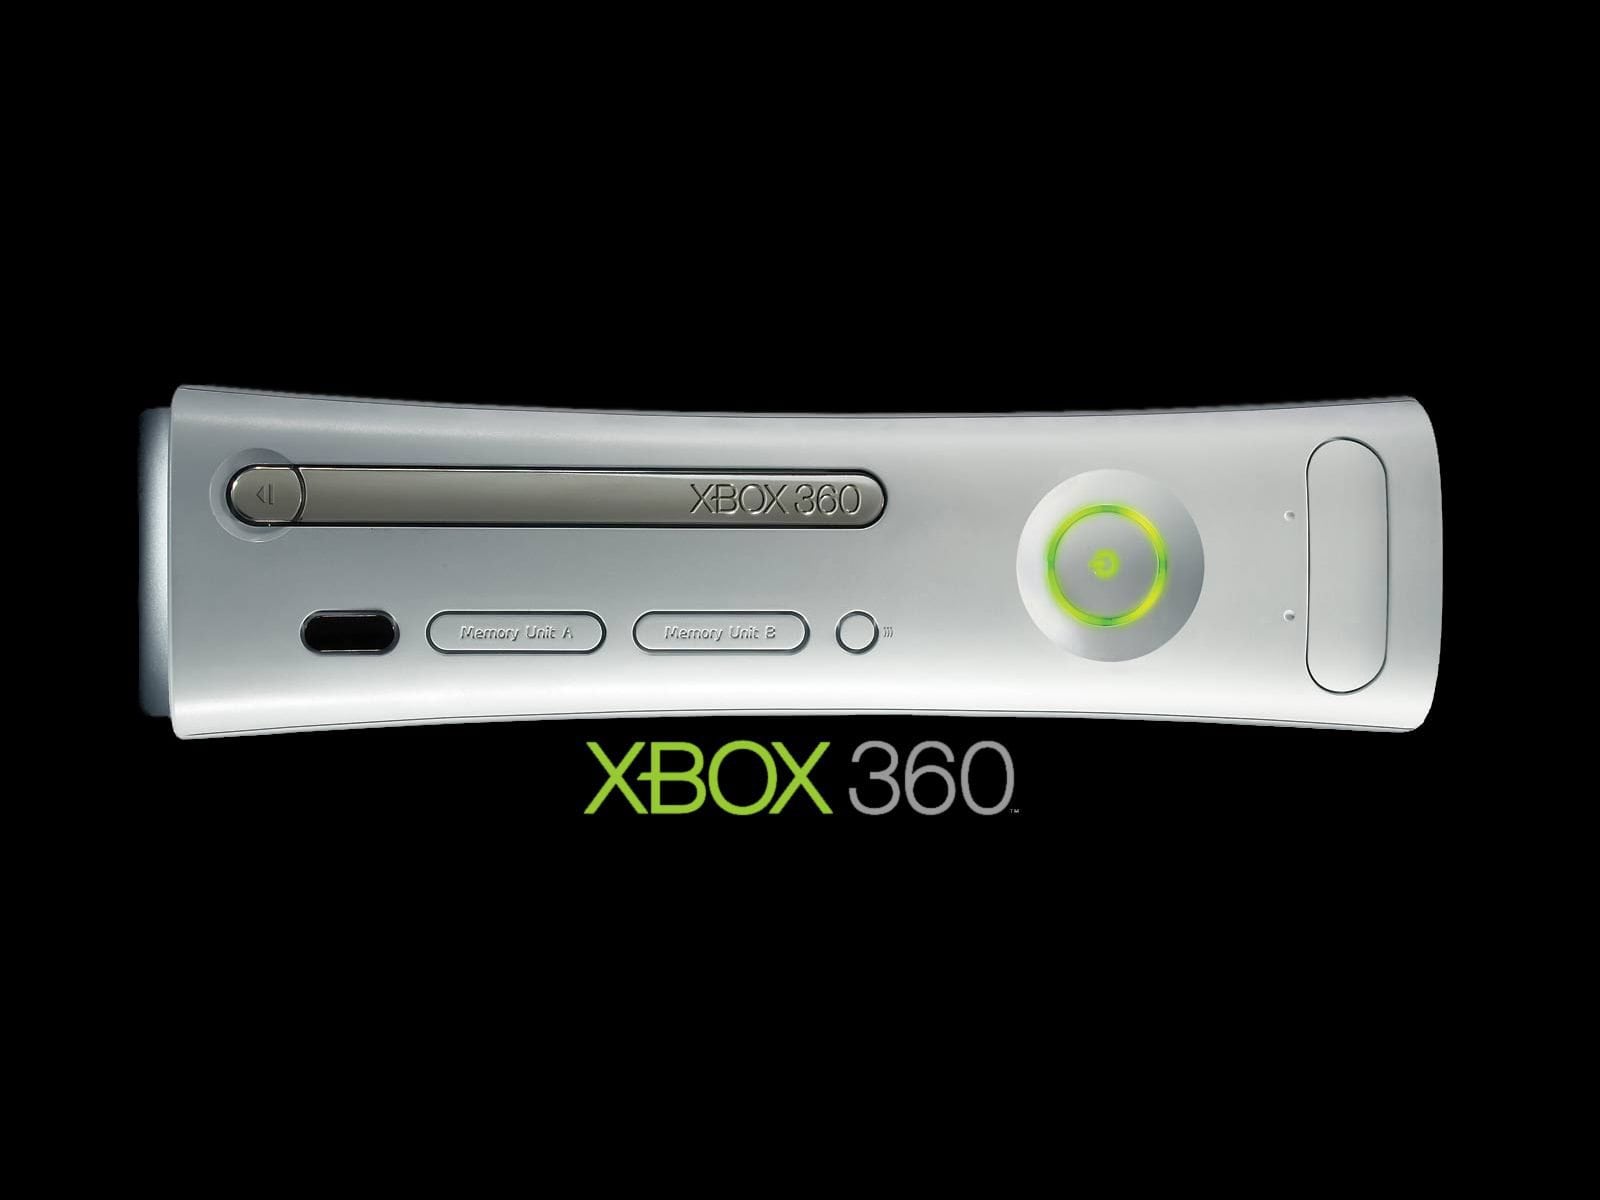 Phil Spencer quer salvar jogos do Xbox 360 da extinção - Canaltech